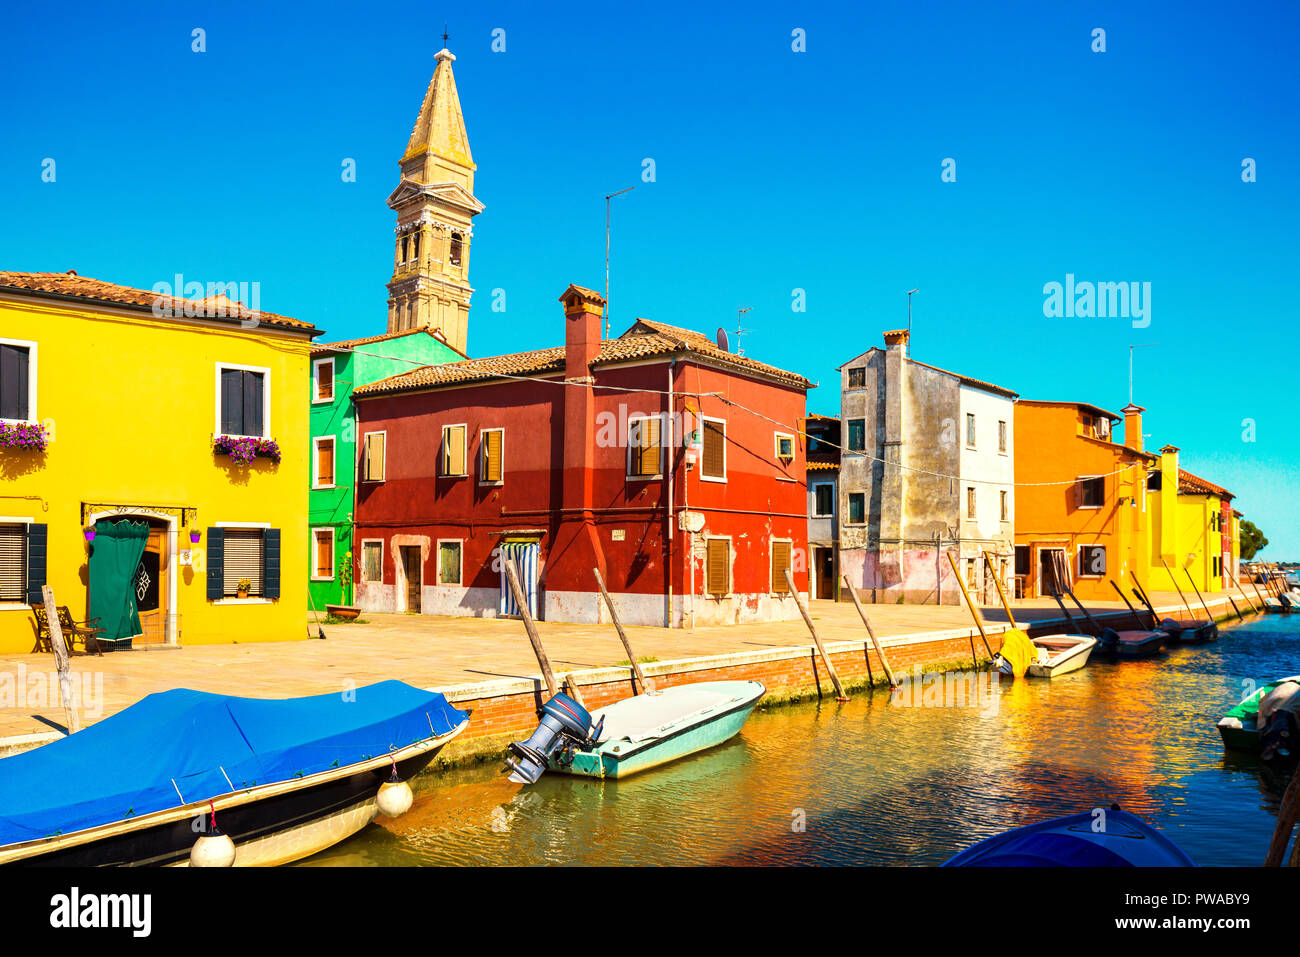 Wahrzeichen von Venedig, Burano Insel Kanal, bunte Häuser und Boote, Italien. Stockfoto